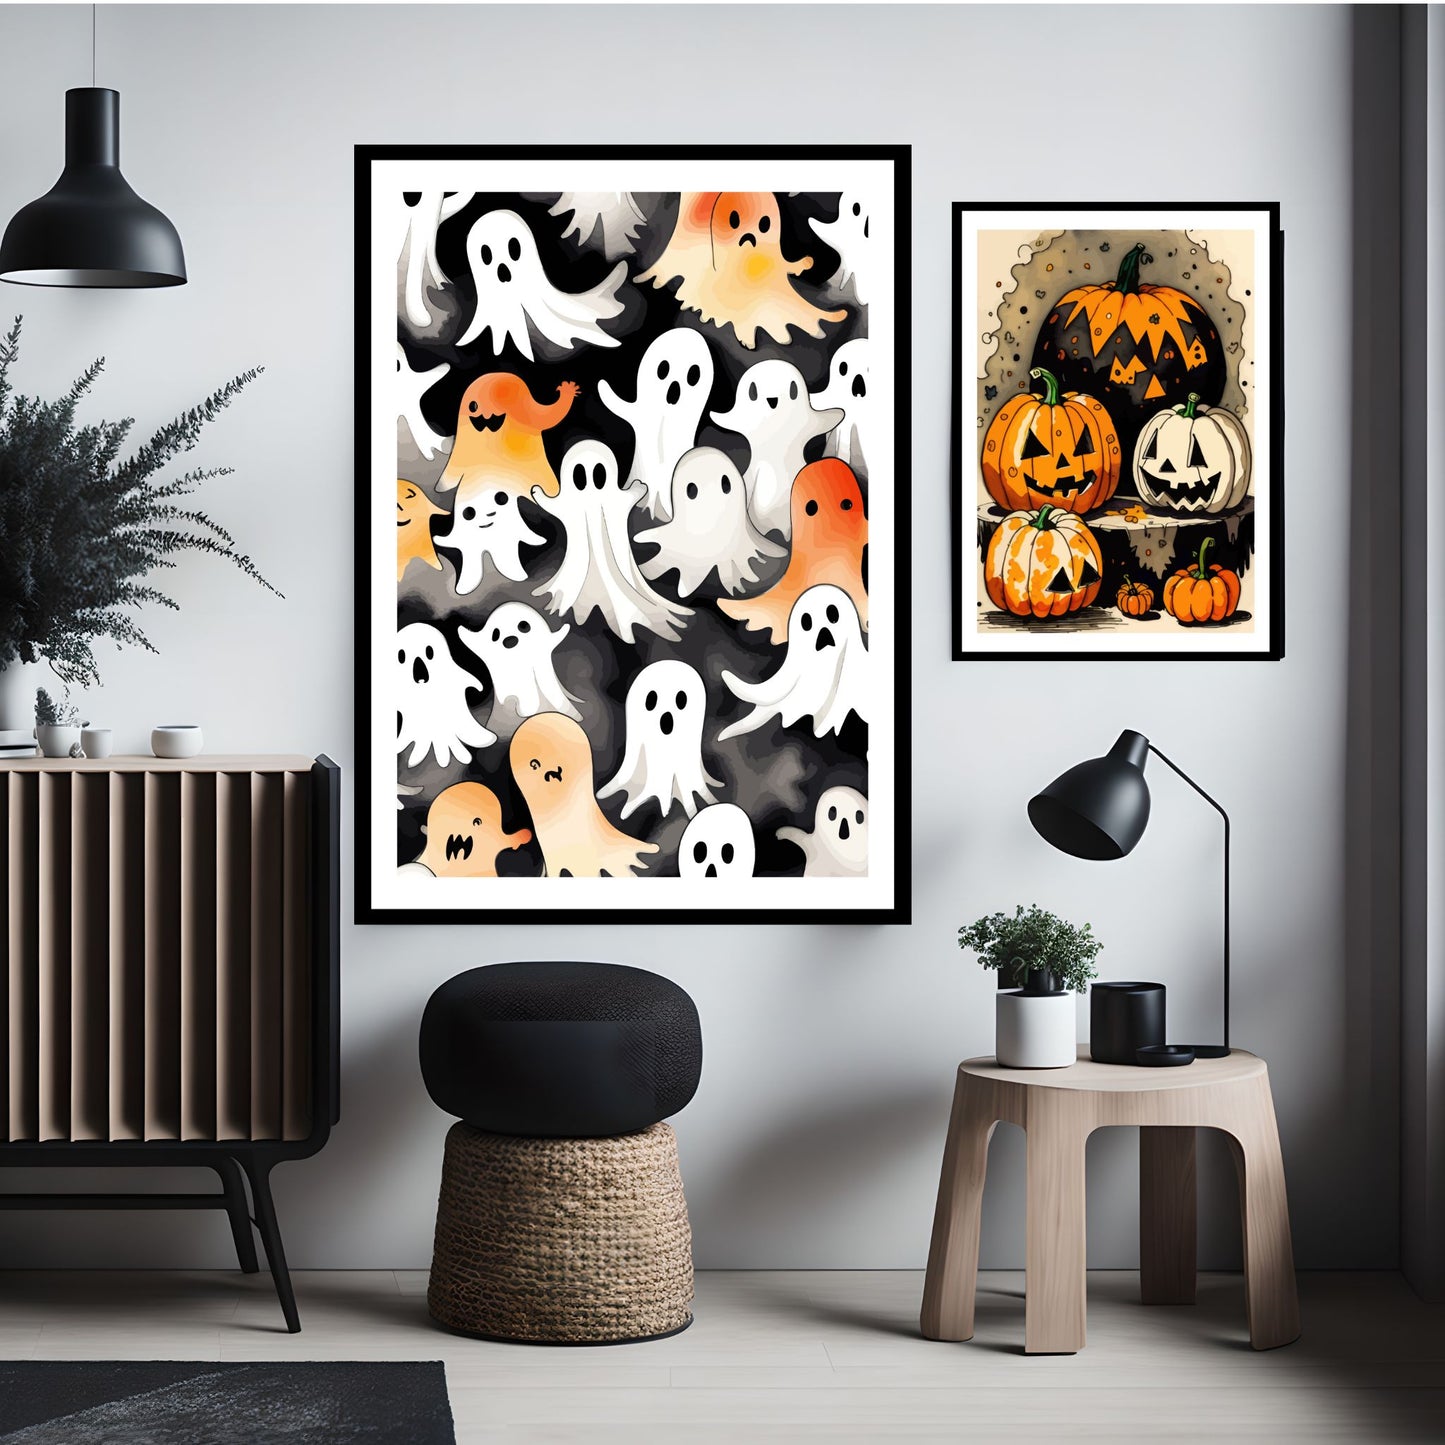 Creepy og kule halloweenplakater som forestiller spøkelser og gresskar